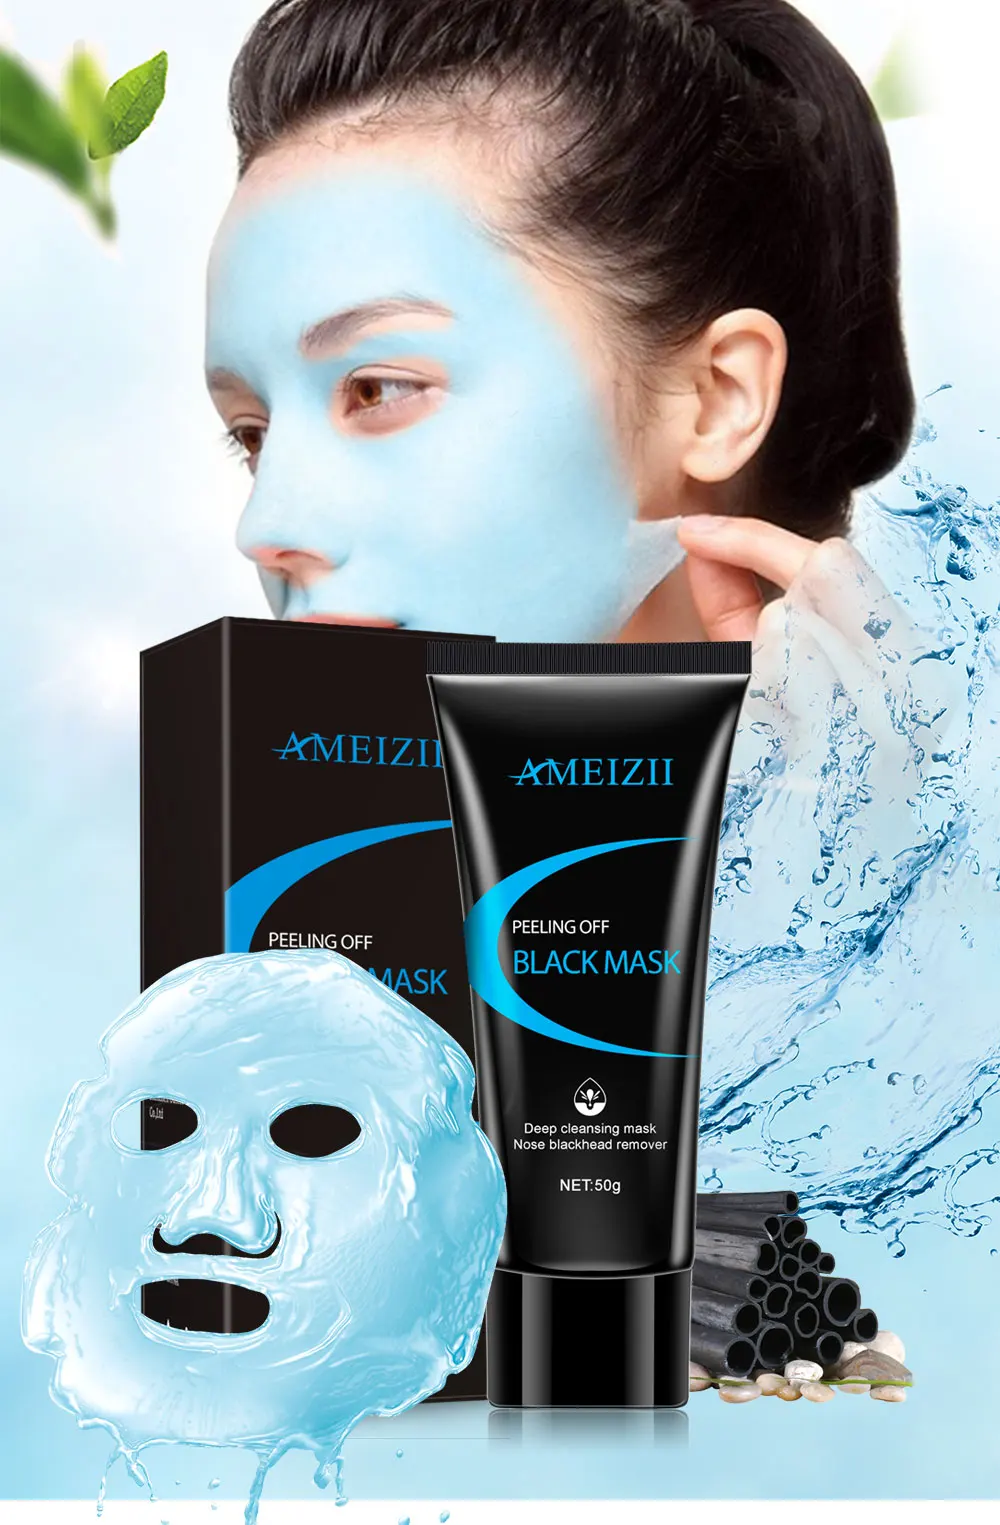 AMEIZII удалить угрей маска усадка пор улучшить грубую кожу акне удаления угрей пилинг синий маска лица глубокое очищение уход